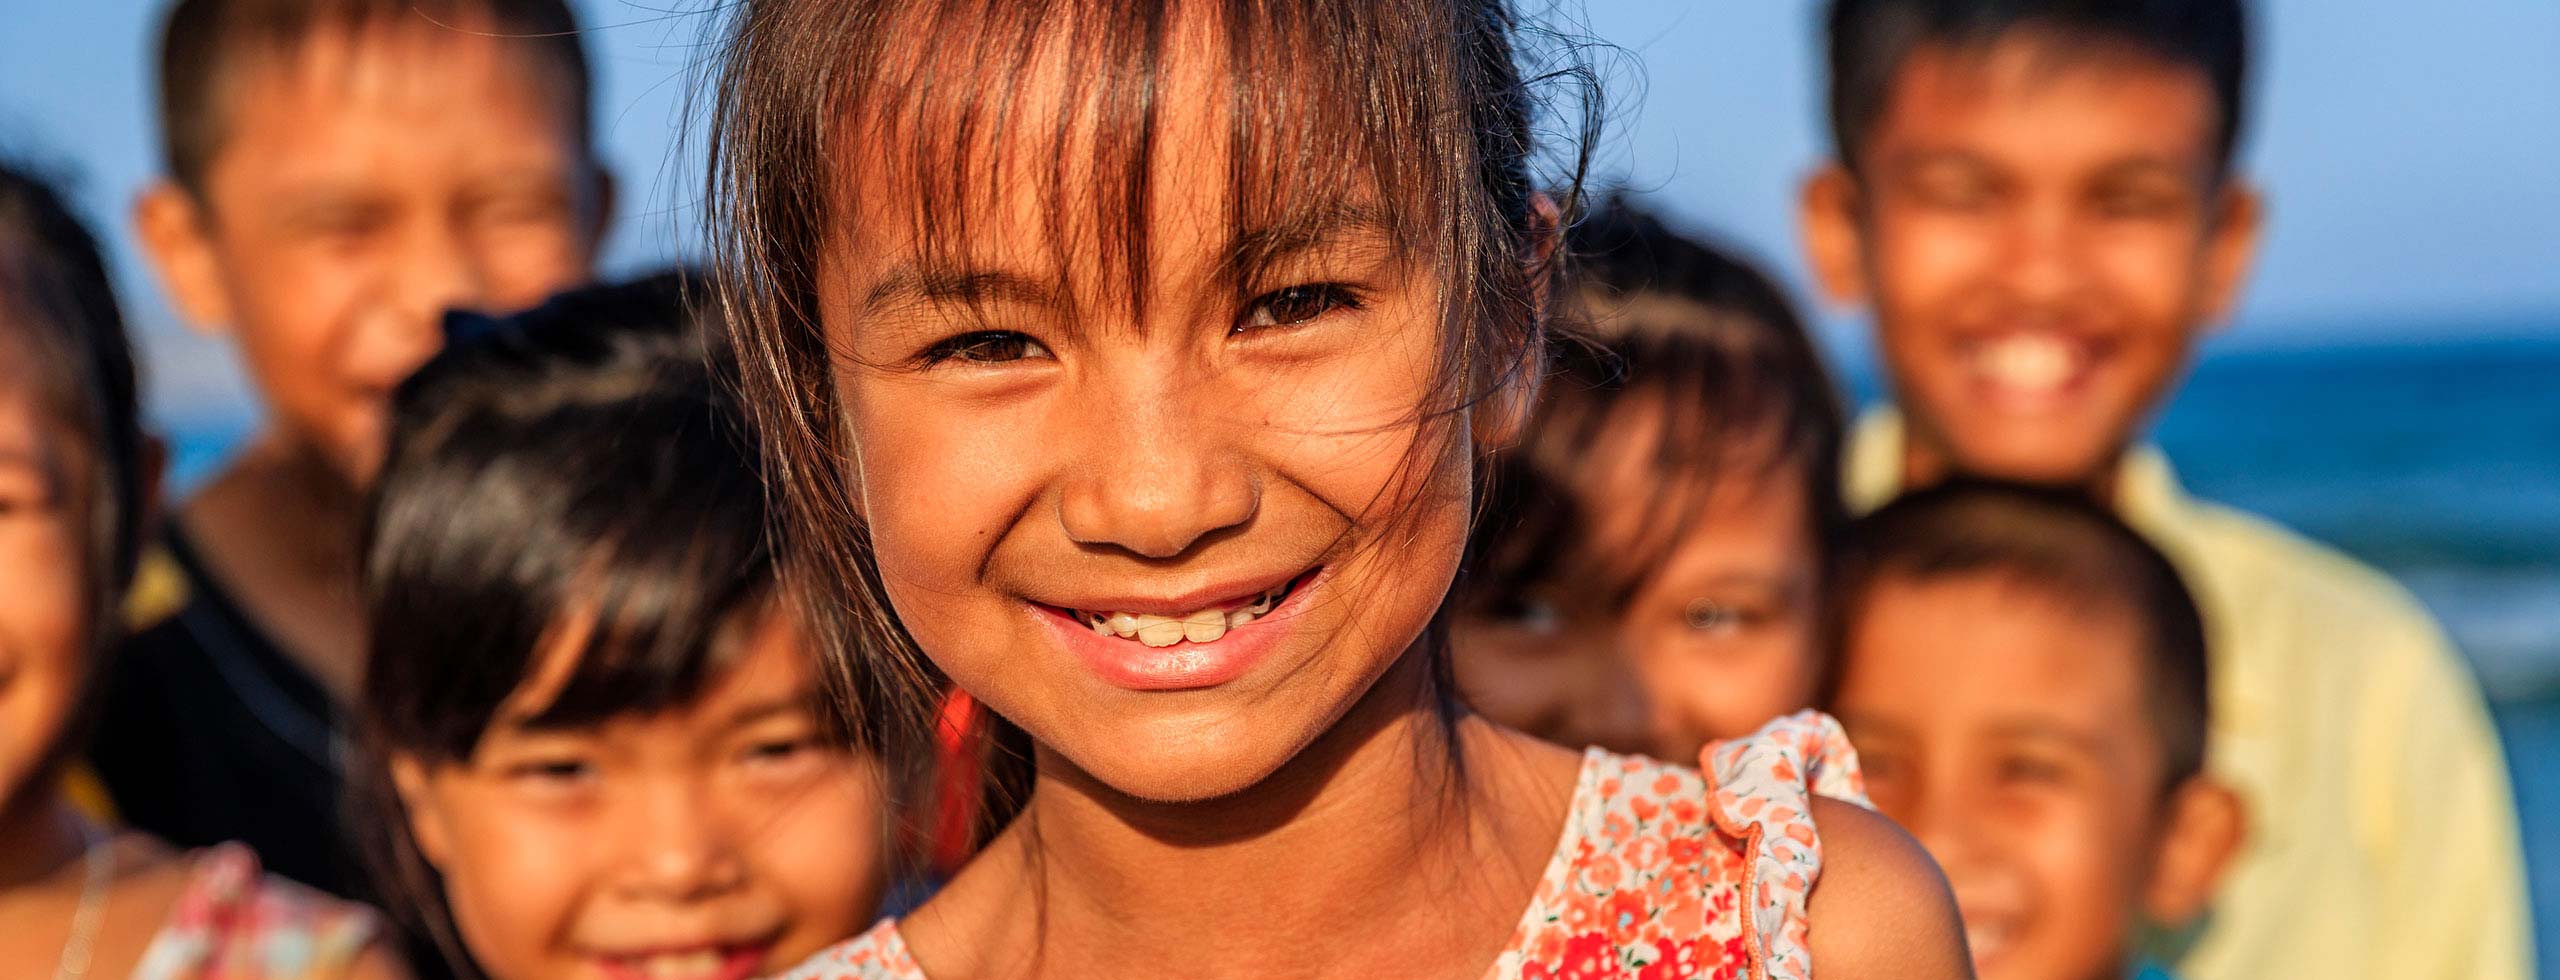 niña sonriendo vietnam Niños sin fronteras adopciones